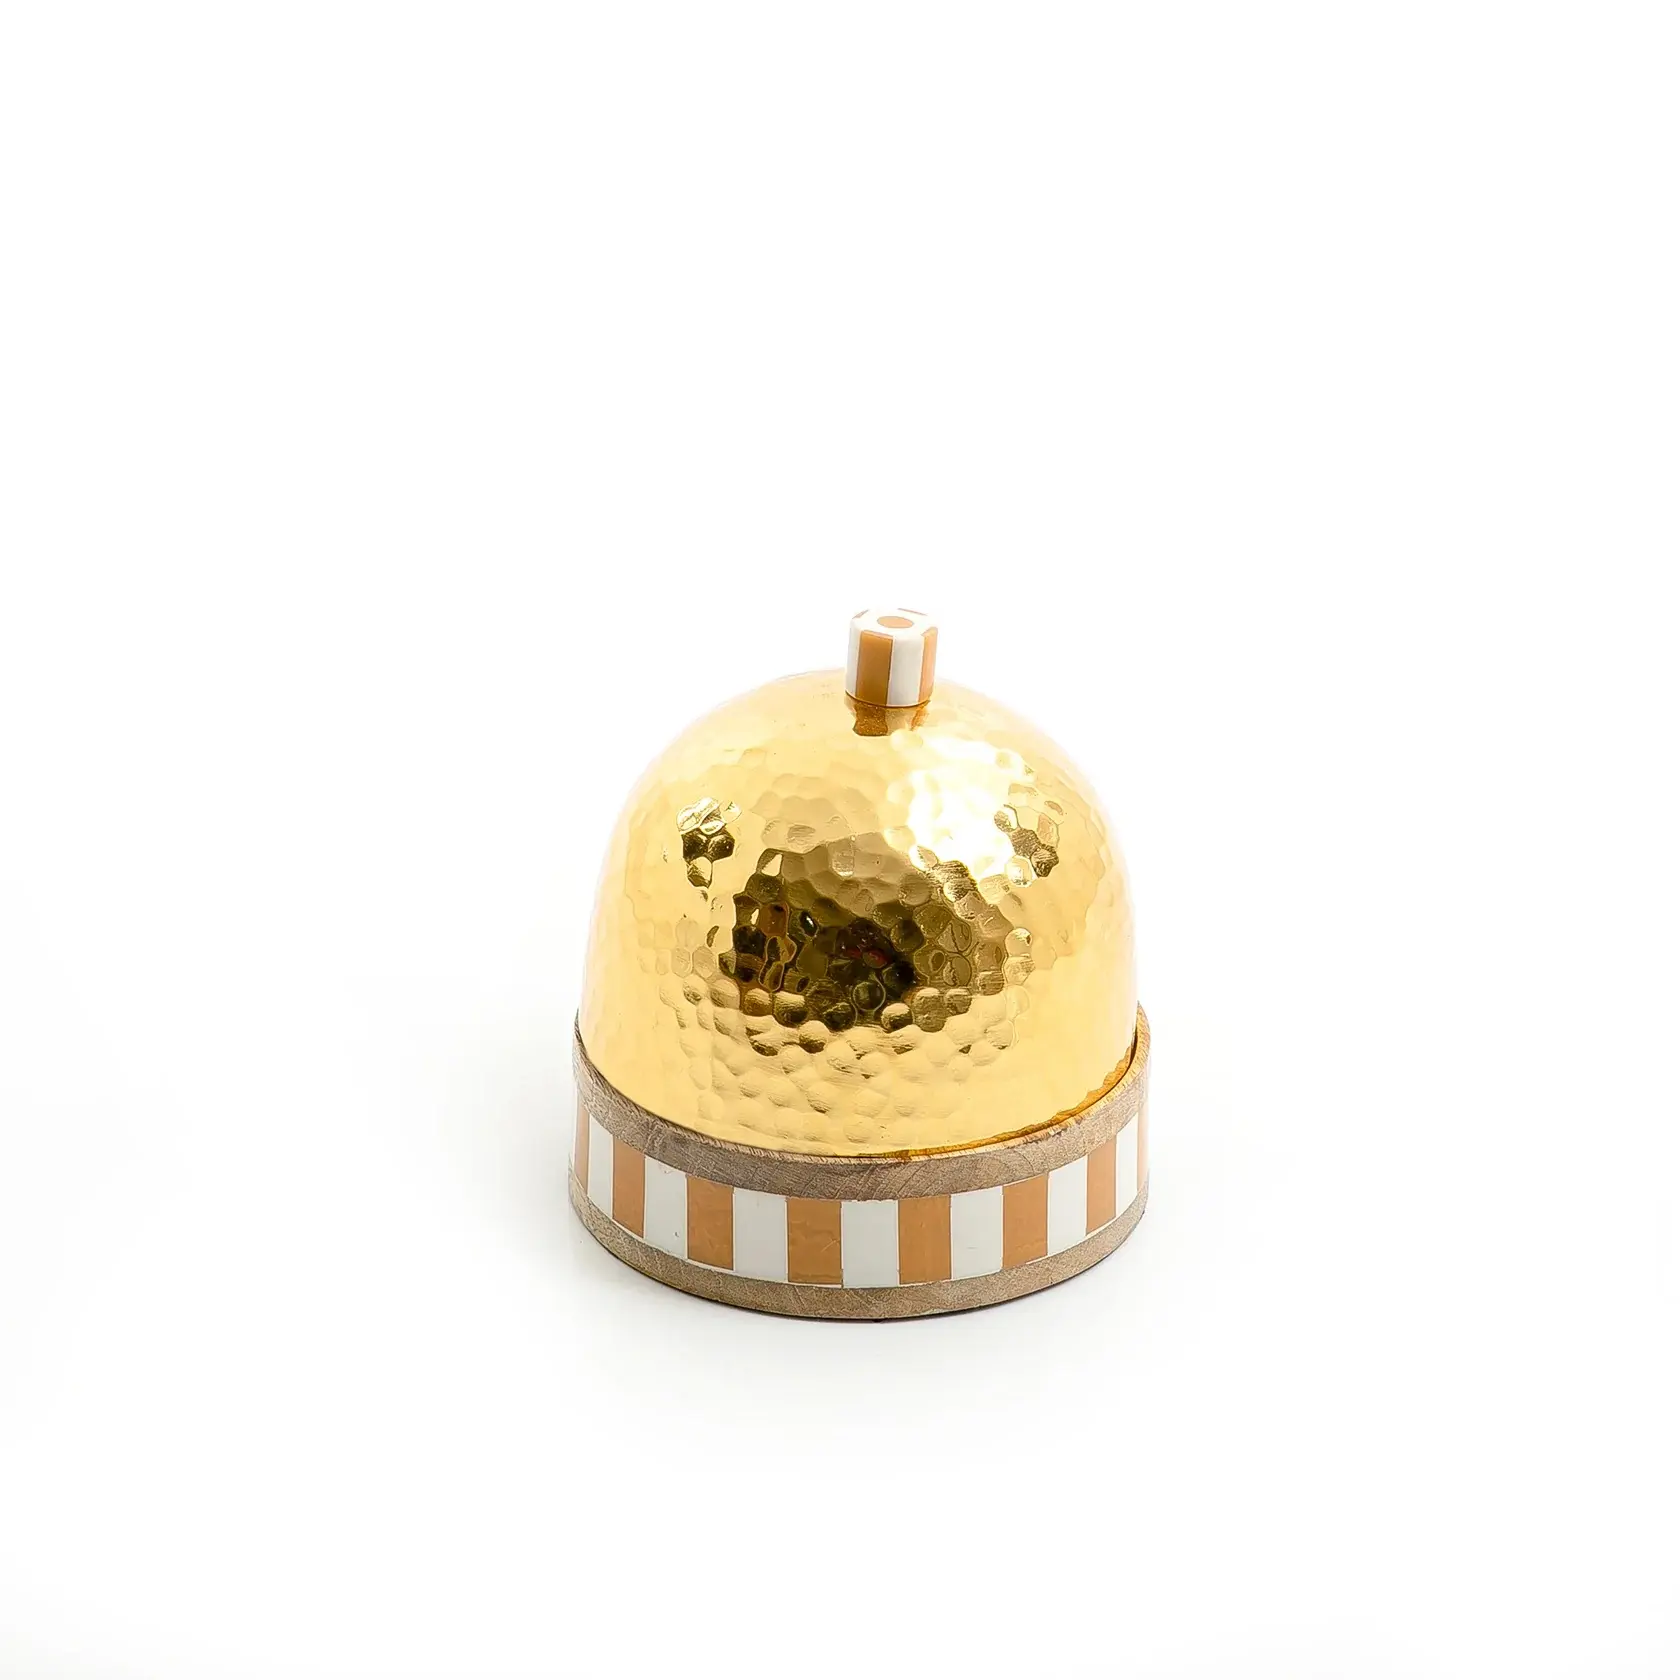 Kim loại vòng Nut máy chủ với mạ Vàng nắp Round Shape Fancy gỗ & nhựa Inlay kẹo Jar cổ điển phong cách trái cây Jar